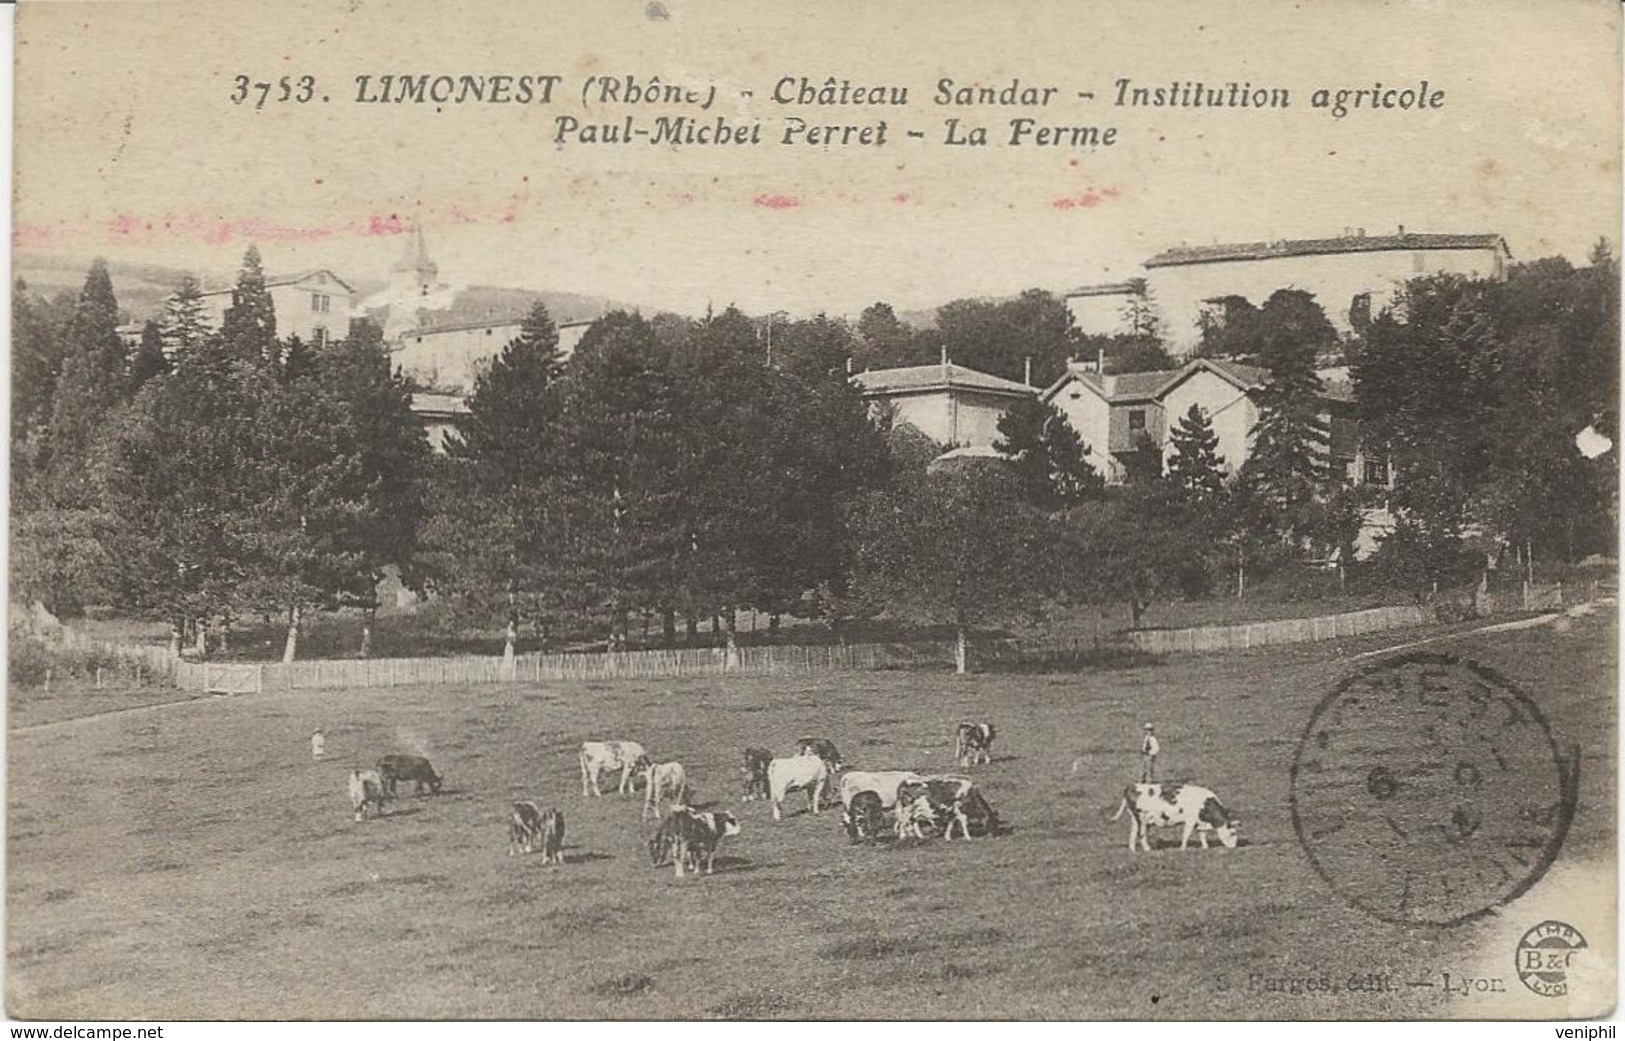 LIMONEST - RHONE - CHATEAU SANDAR - LA FERME -INTITUTION AGRICOLE P.M.PERRET -ANNEE 1918 - Limonest